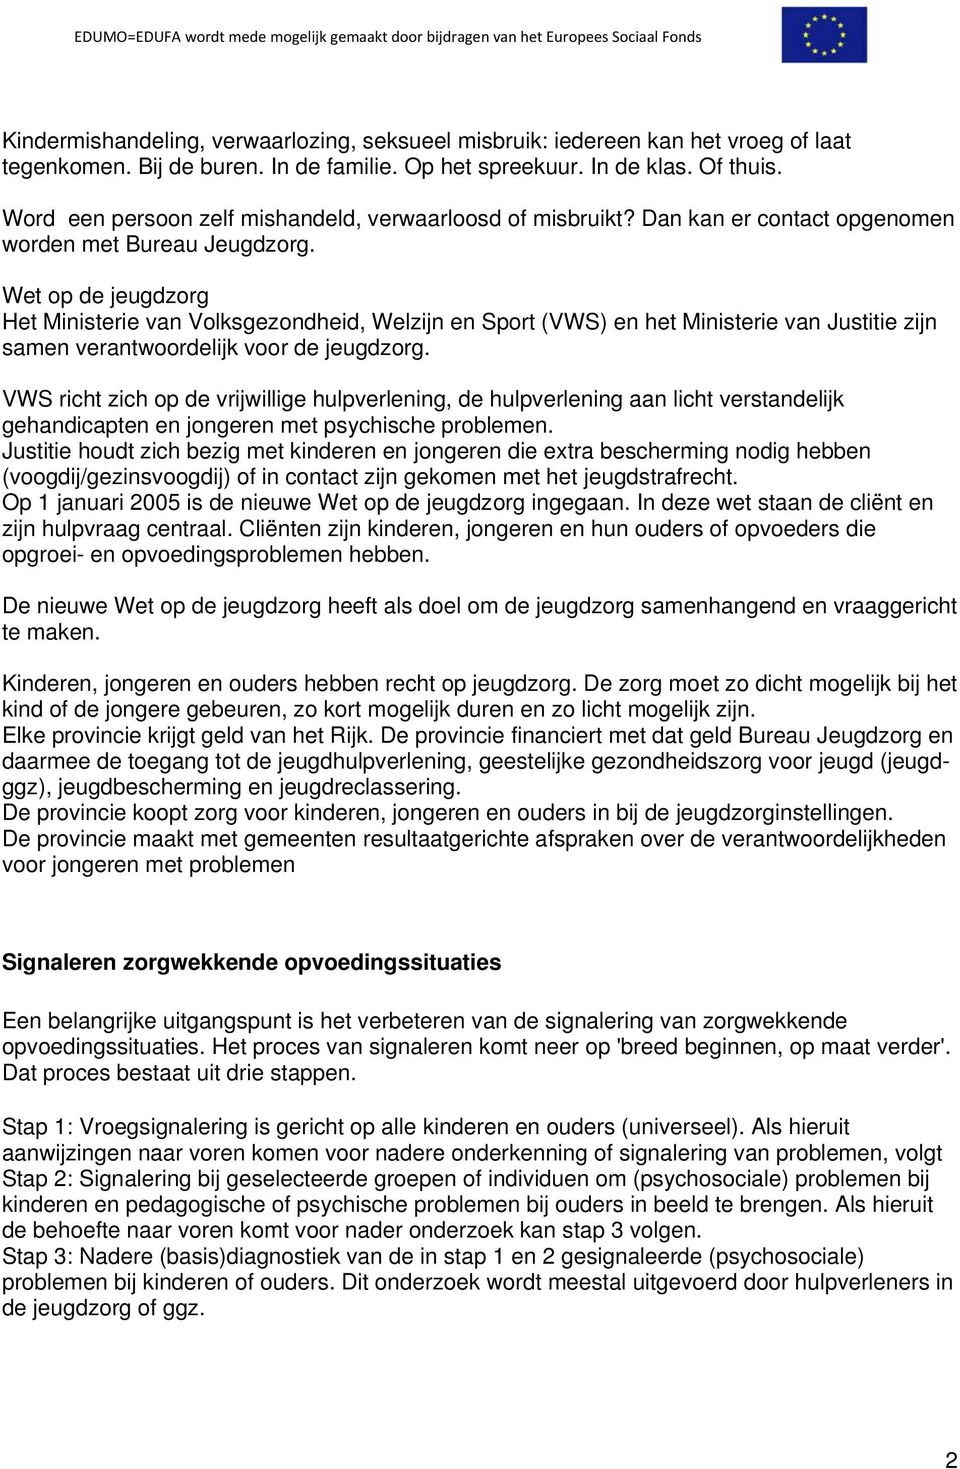 Wet op de jeugdzorg Het Ministerie van Volksgezondheid, Welzijn en Sport (VWS) en het Ministerie van Justitie zijn samen verantwoordelijk voor de jeugdzorg.